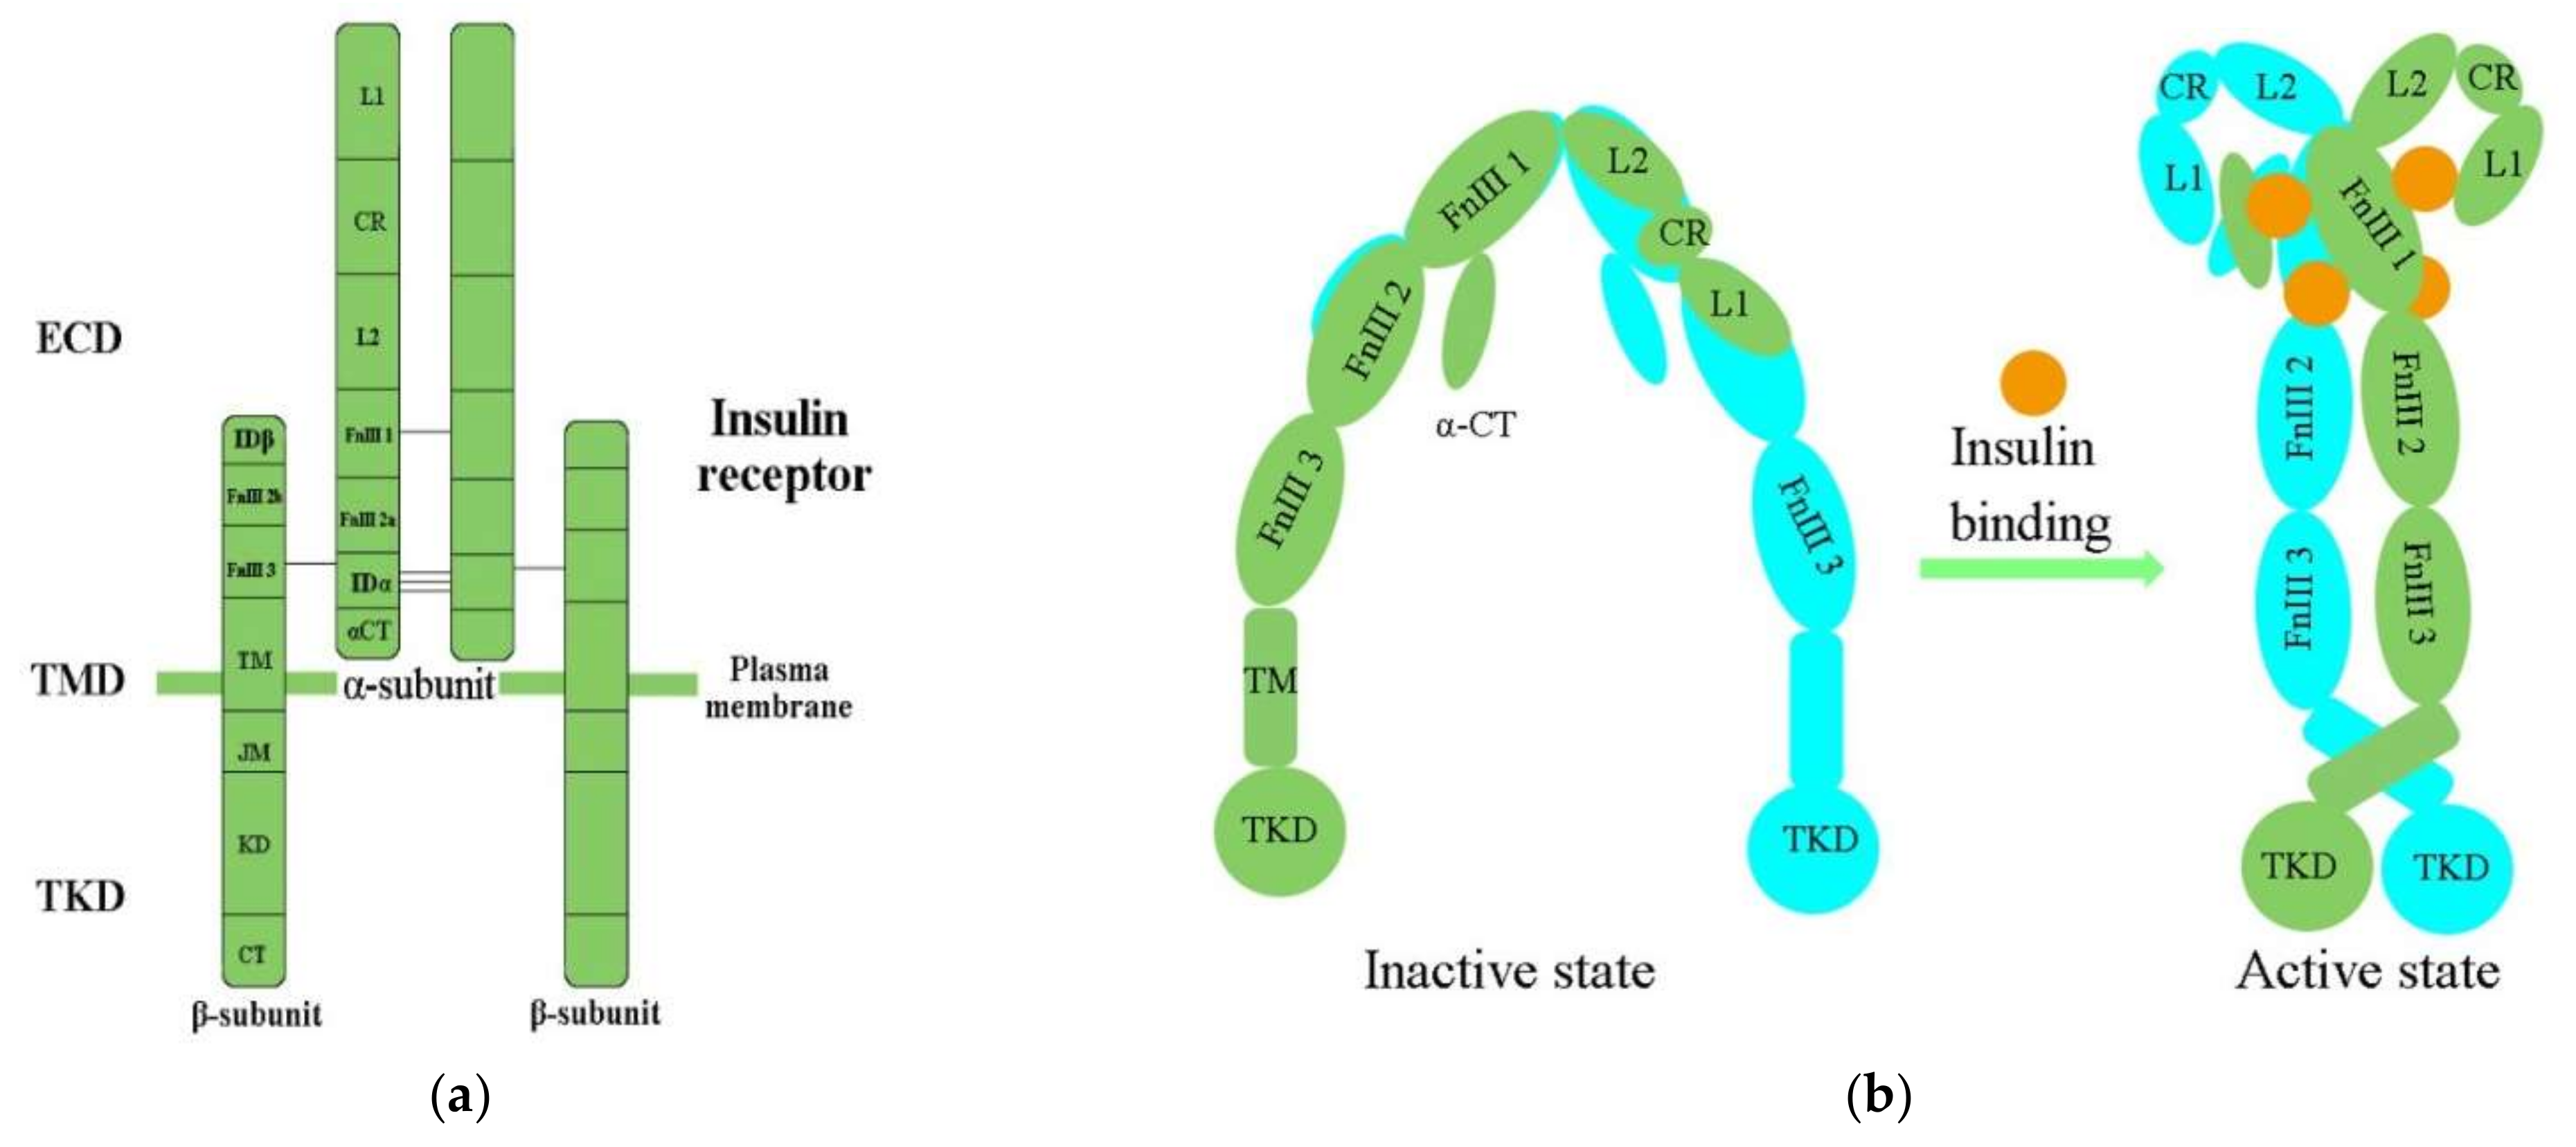 Relative Uptake, Metabolism, and β-Receptor Binding of (1R,2S)-4